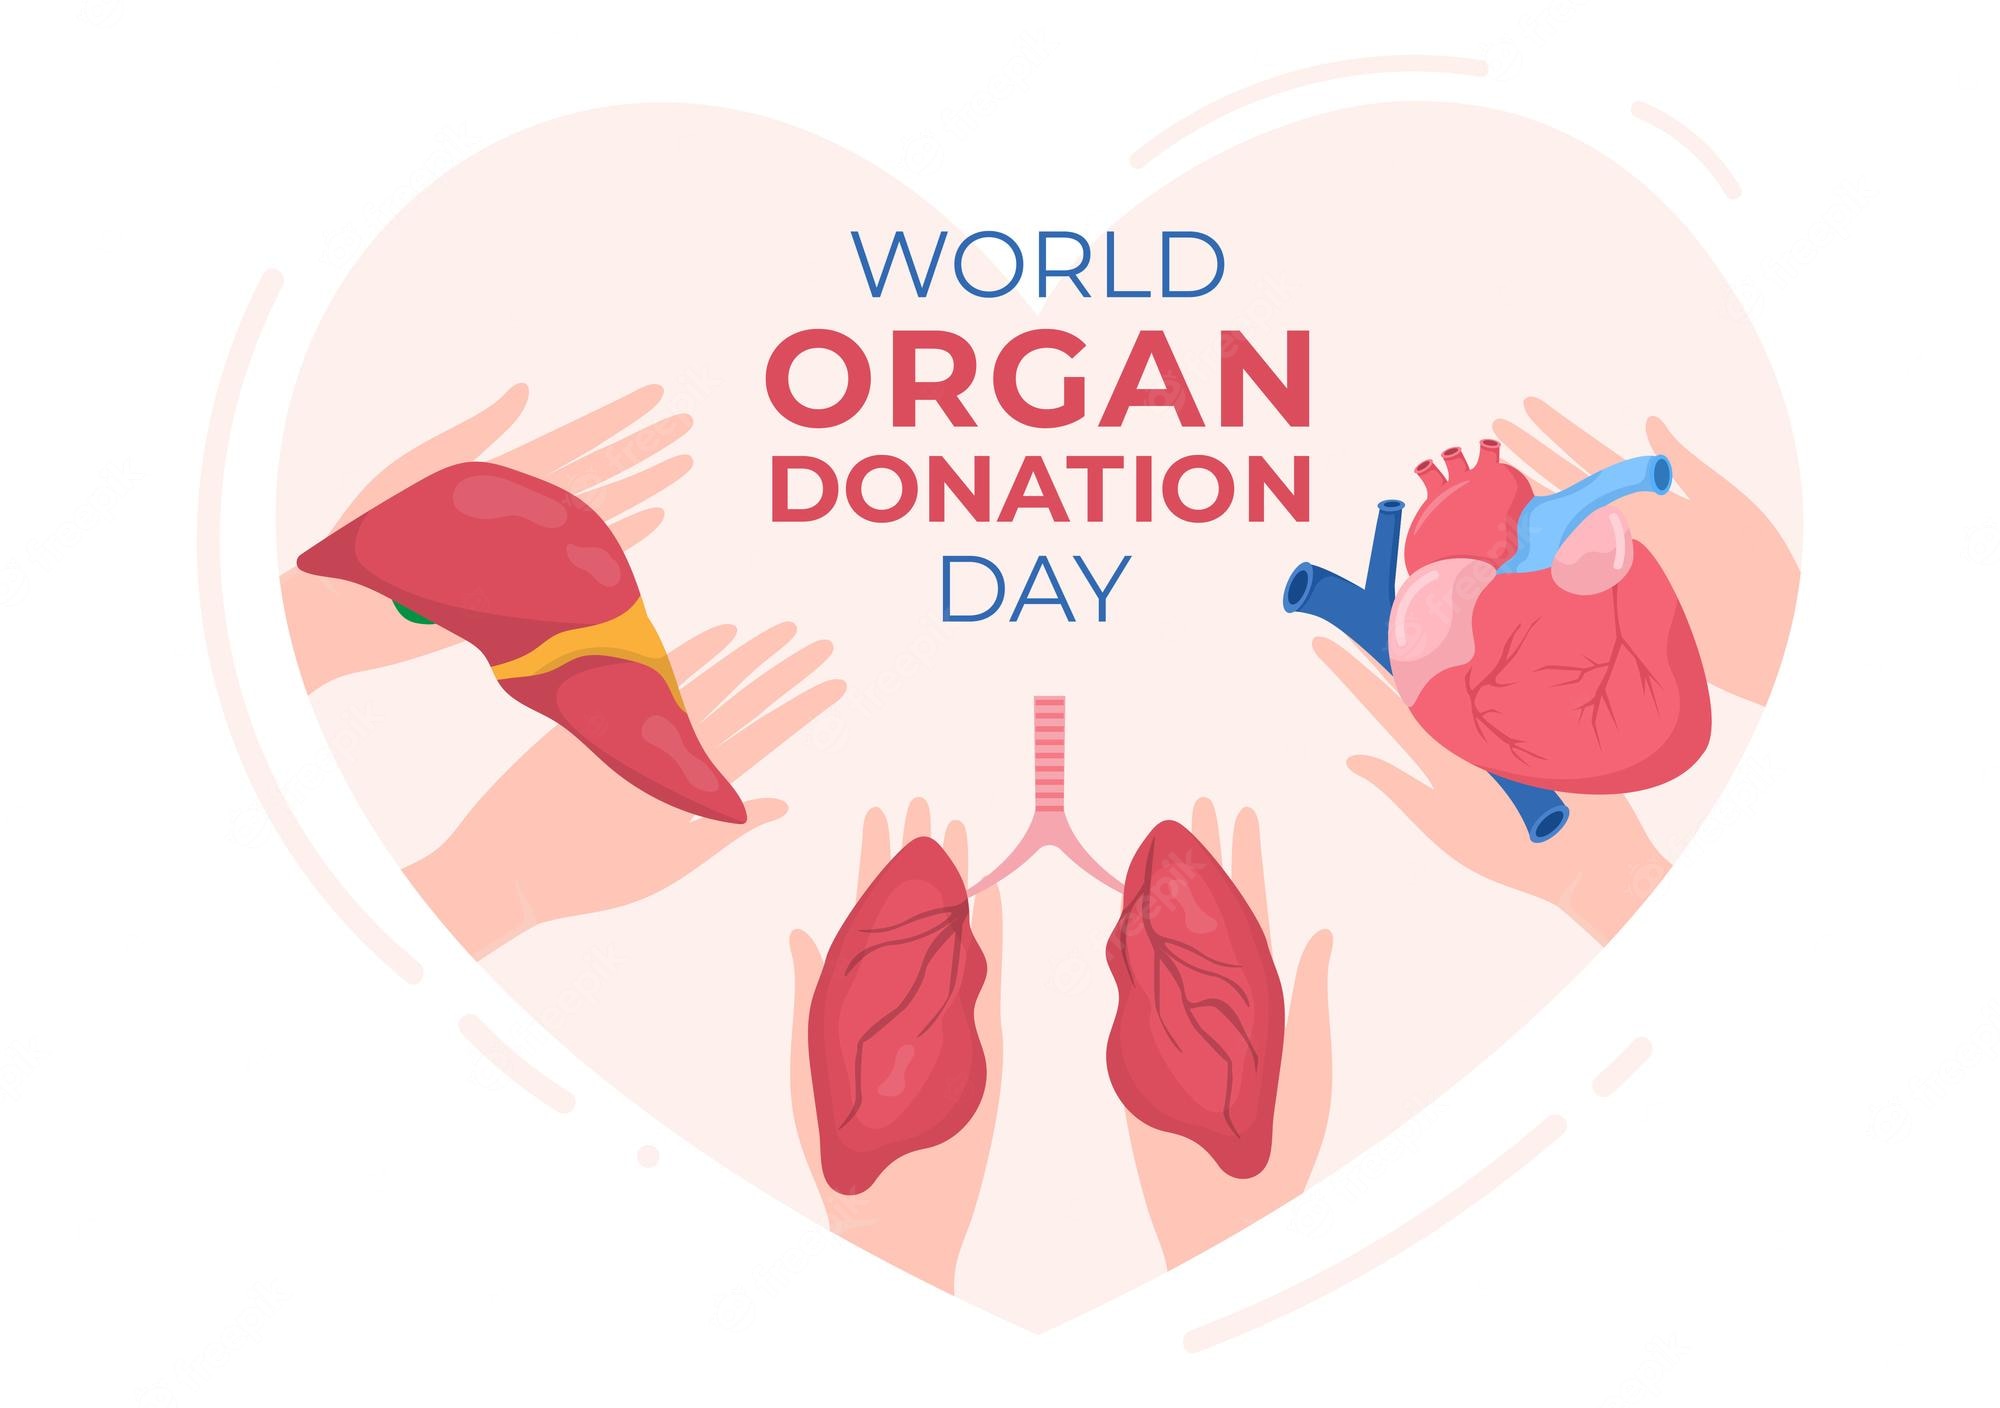 world-organ-donation-day-transplantation-saving-lives-health-care-cartoon-illustration_2175-5261.jpg